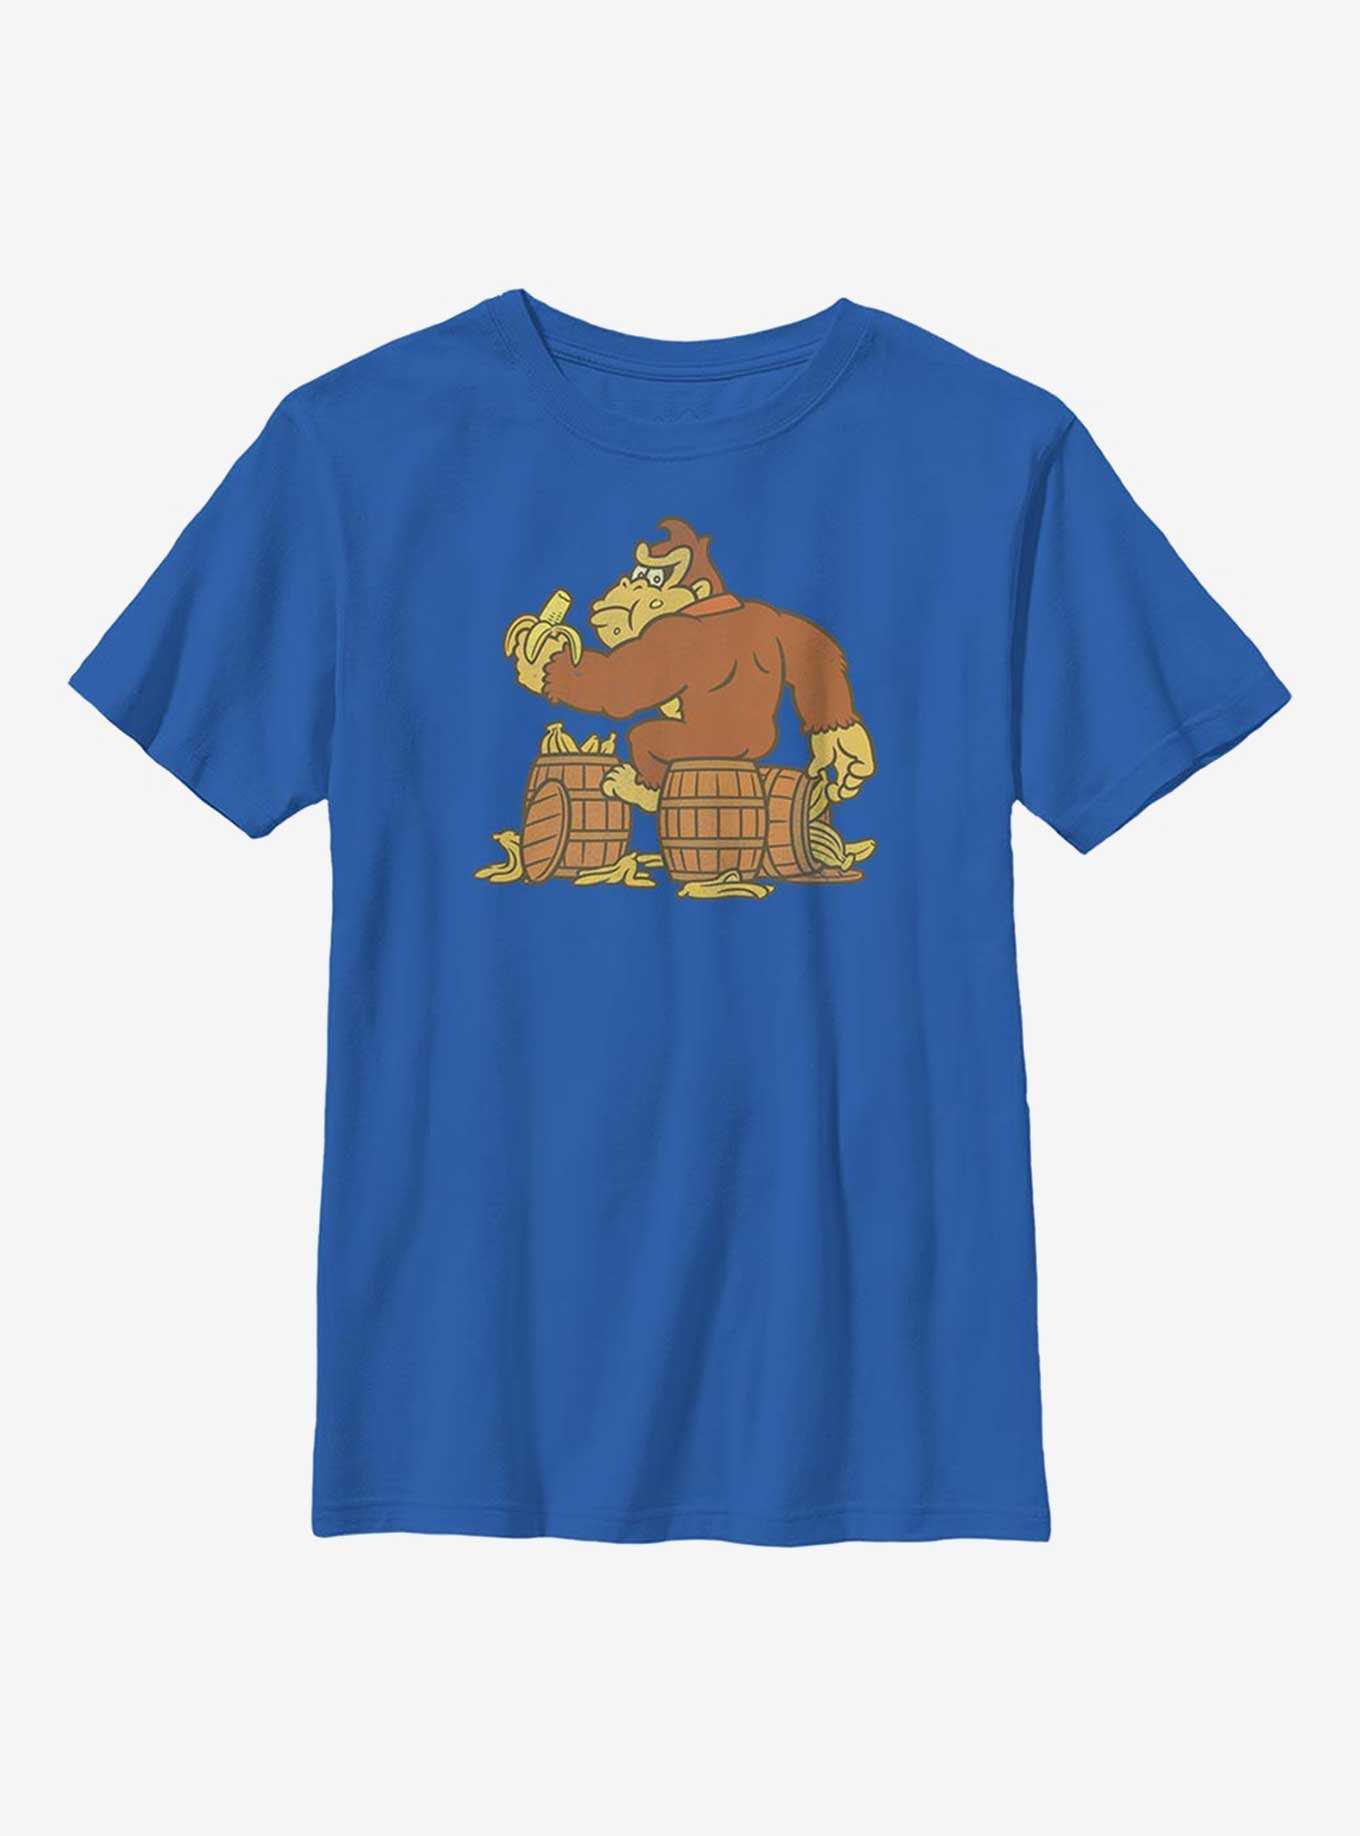 Nintendo Donkey Kong Bananas Youth T-Shirt, , hi-res